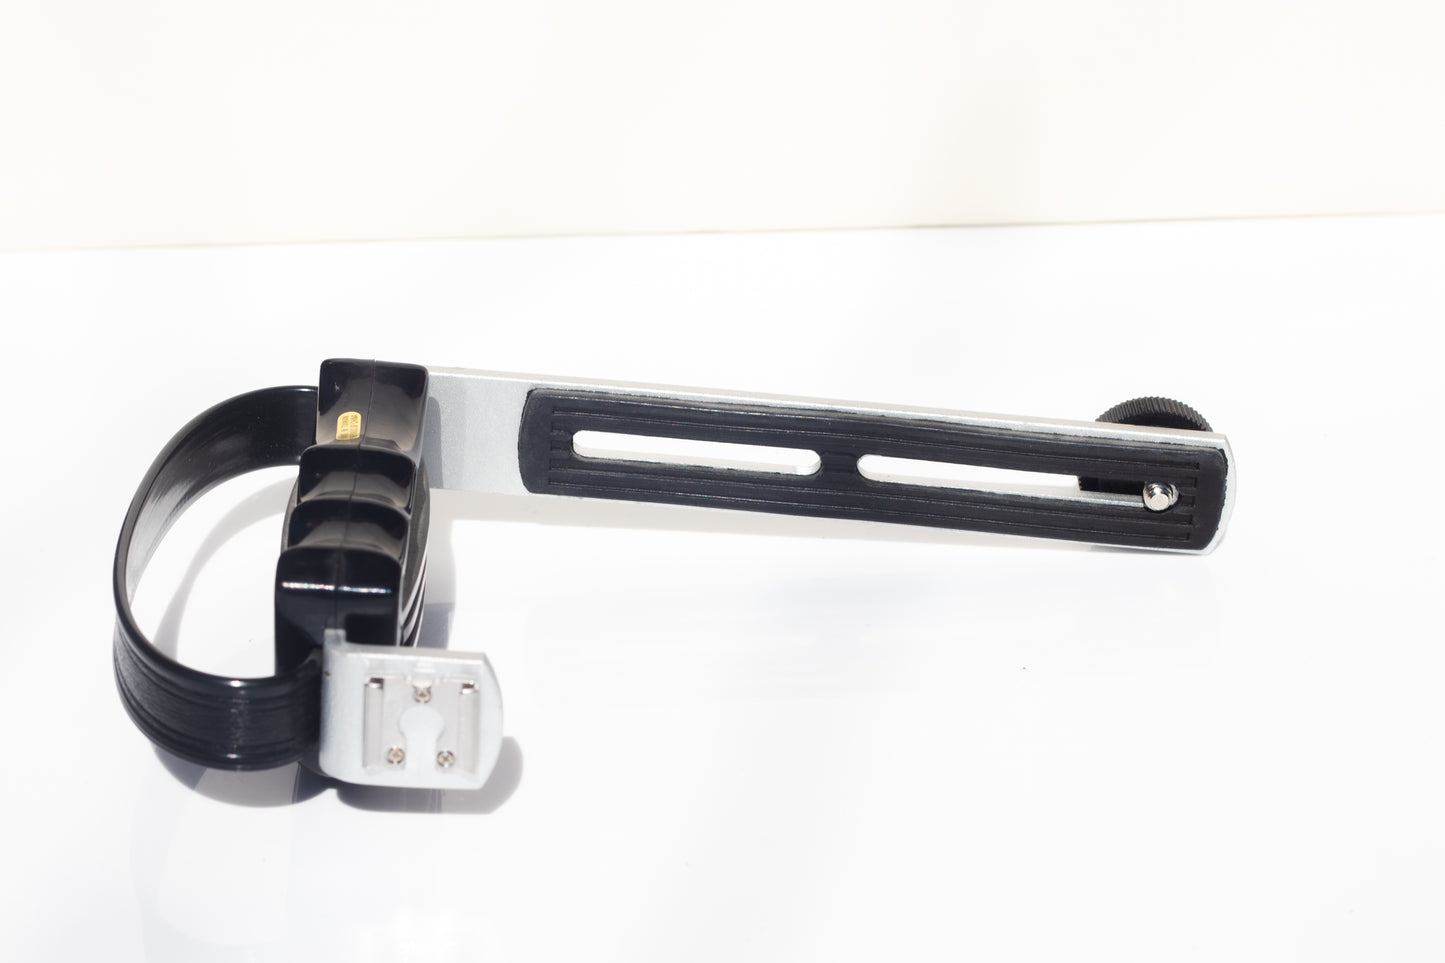 Left Hand Grip | Film Flash Gun Grip For Multiple Cameras | Sliding screw for adjusting size of camera